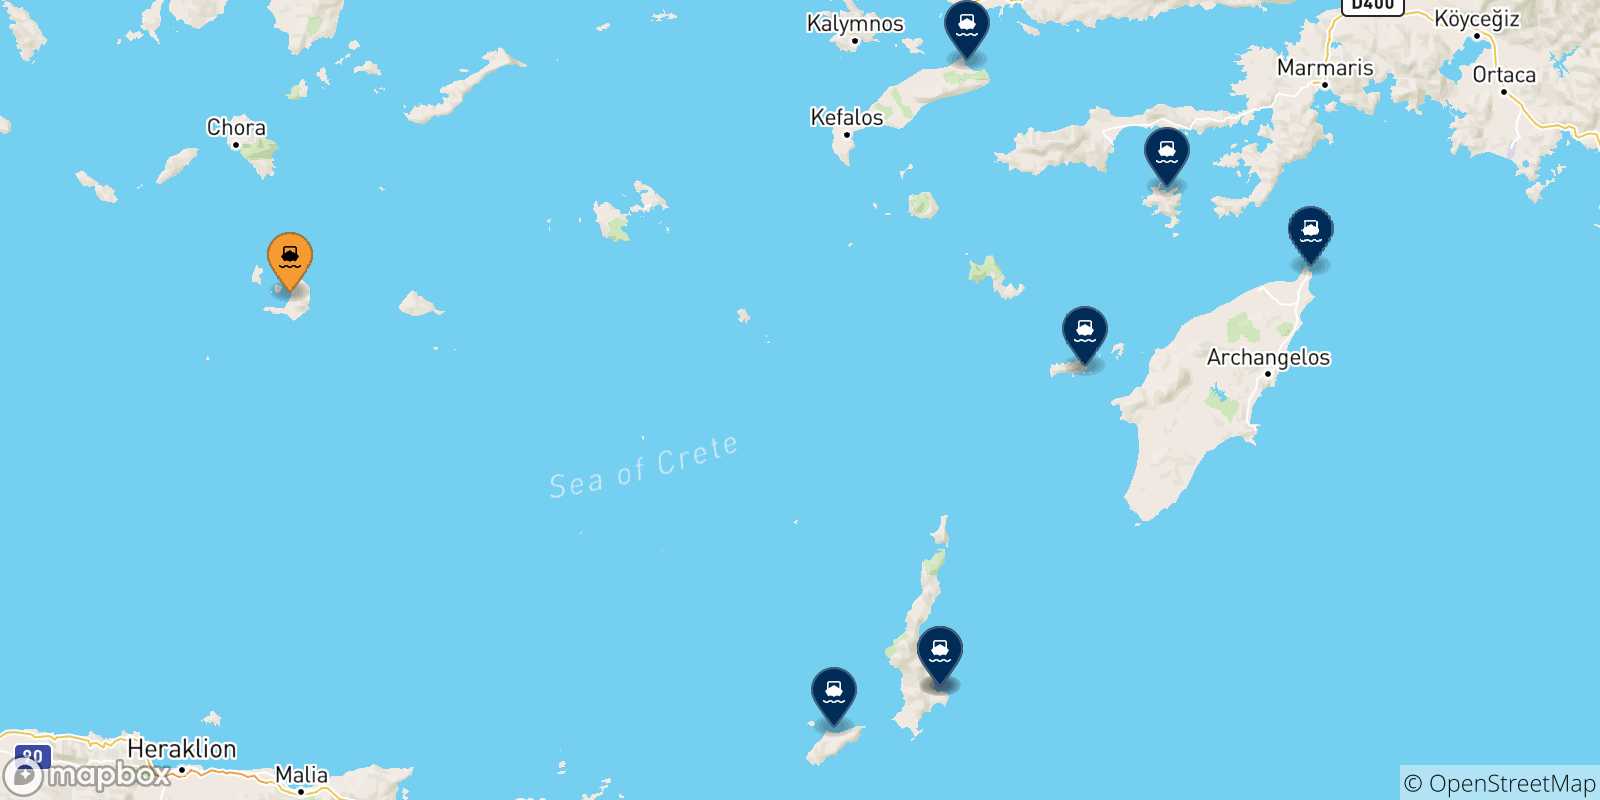 Mappa delle possibili rotte tra Santorini e le Isole Dodecaneso